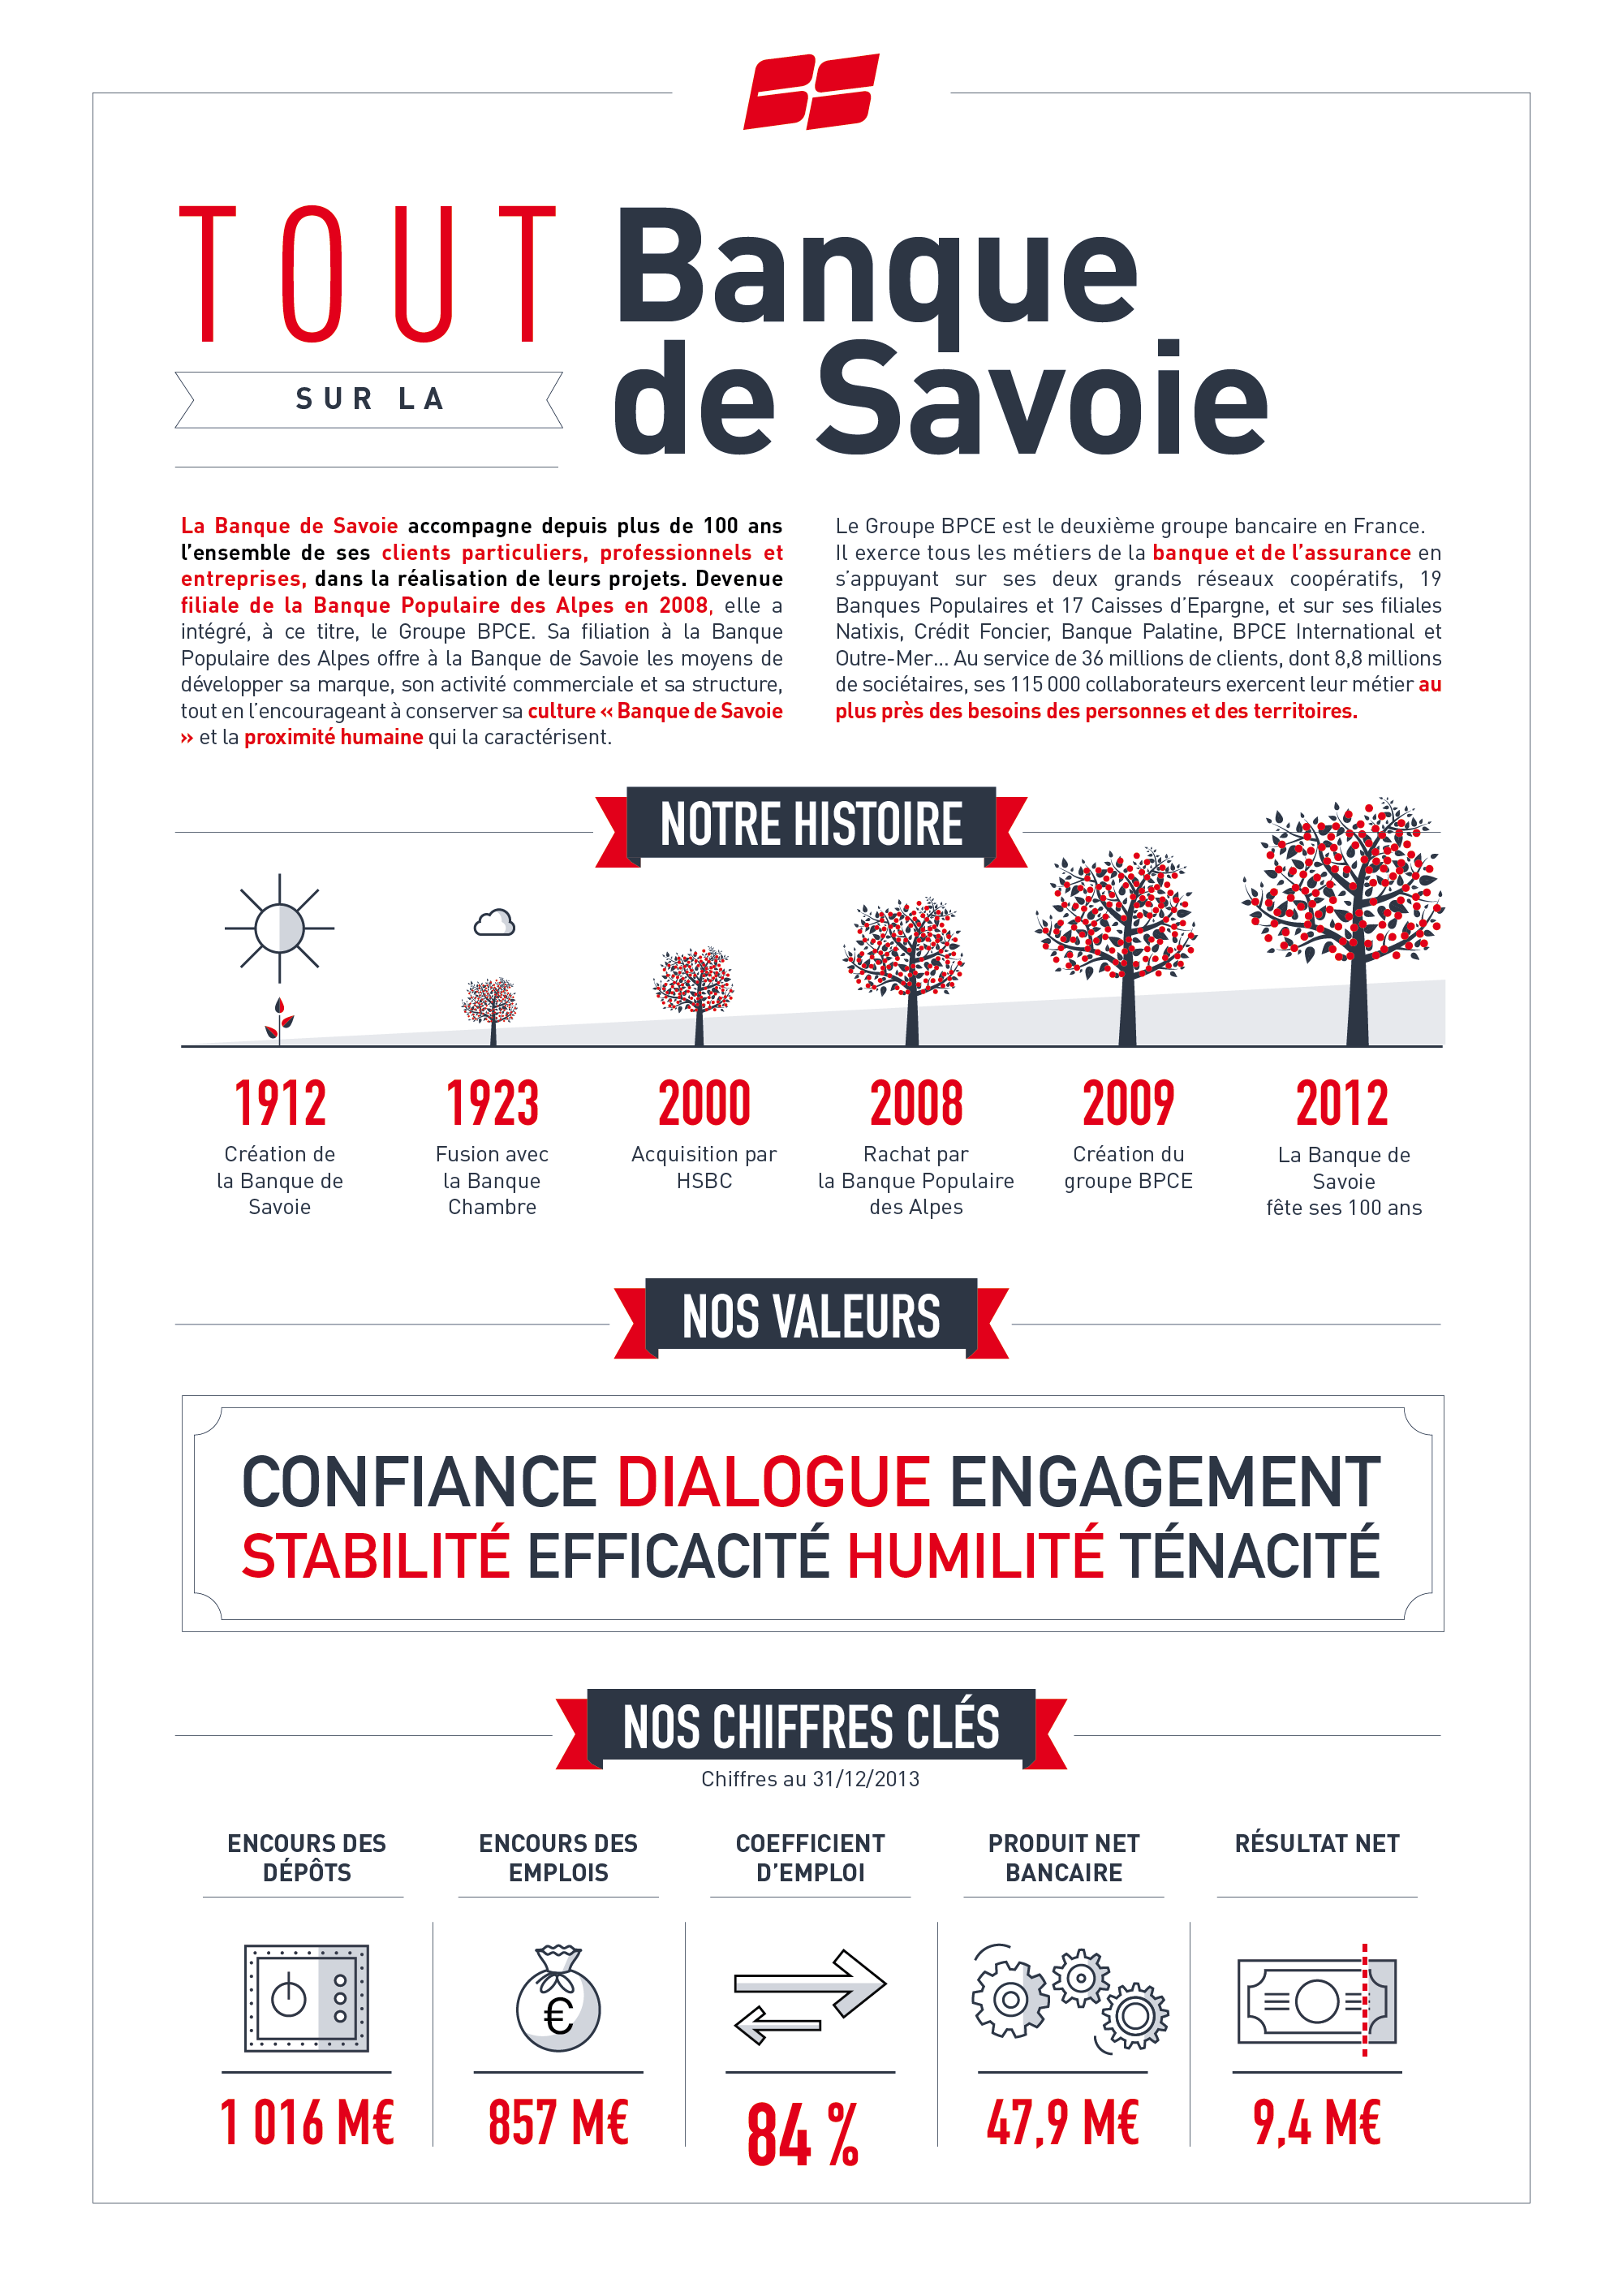 1-BANQUE-DE-SAVOIE-Chiffres-cles-infographie-ECLAIRAGE-PUBLIC-2000